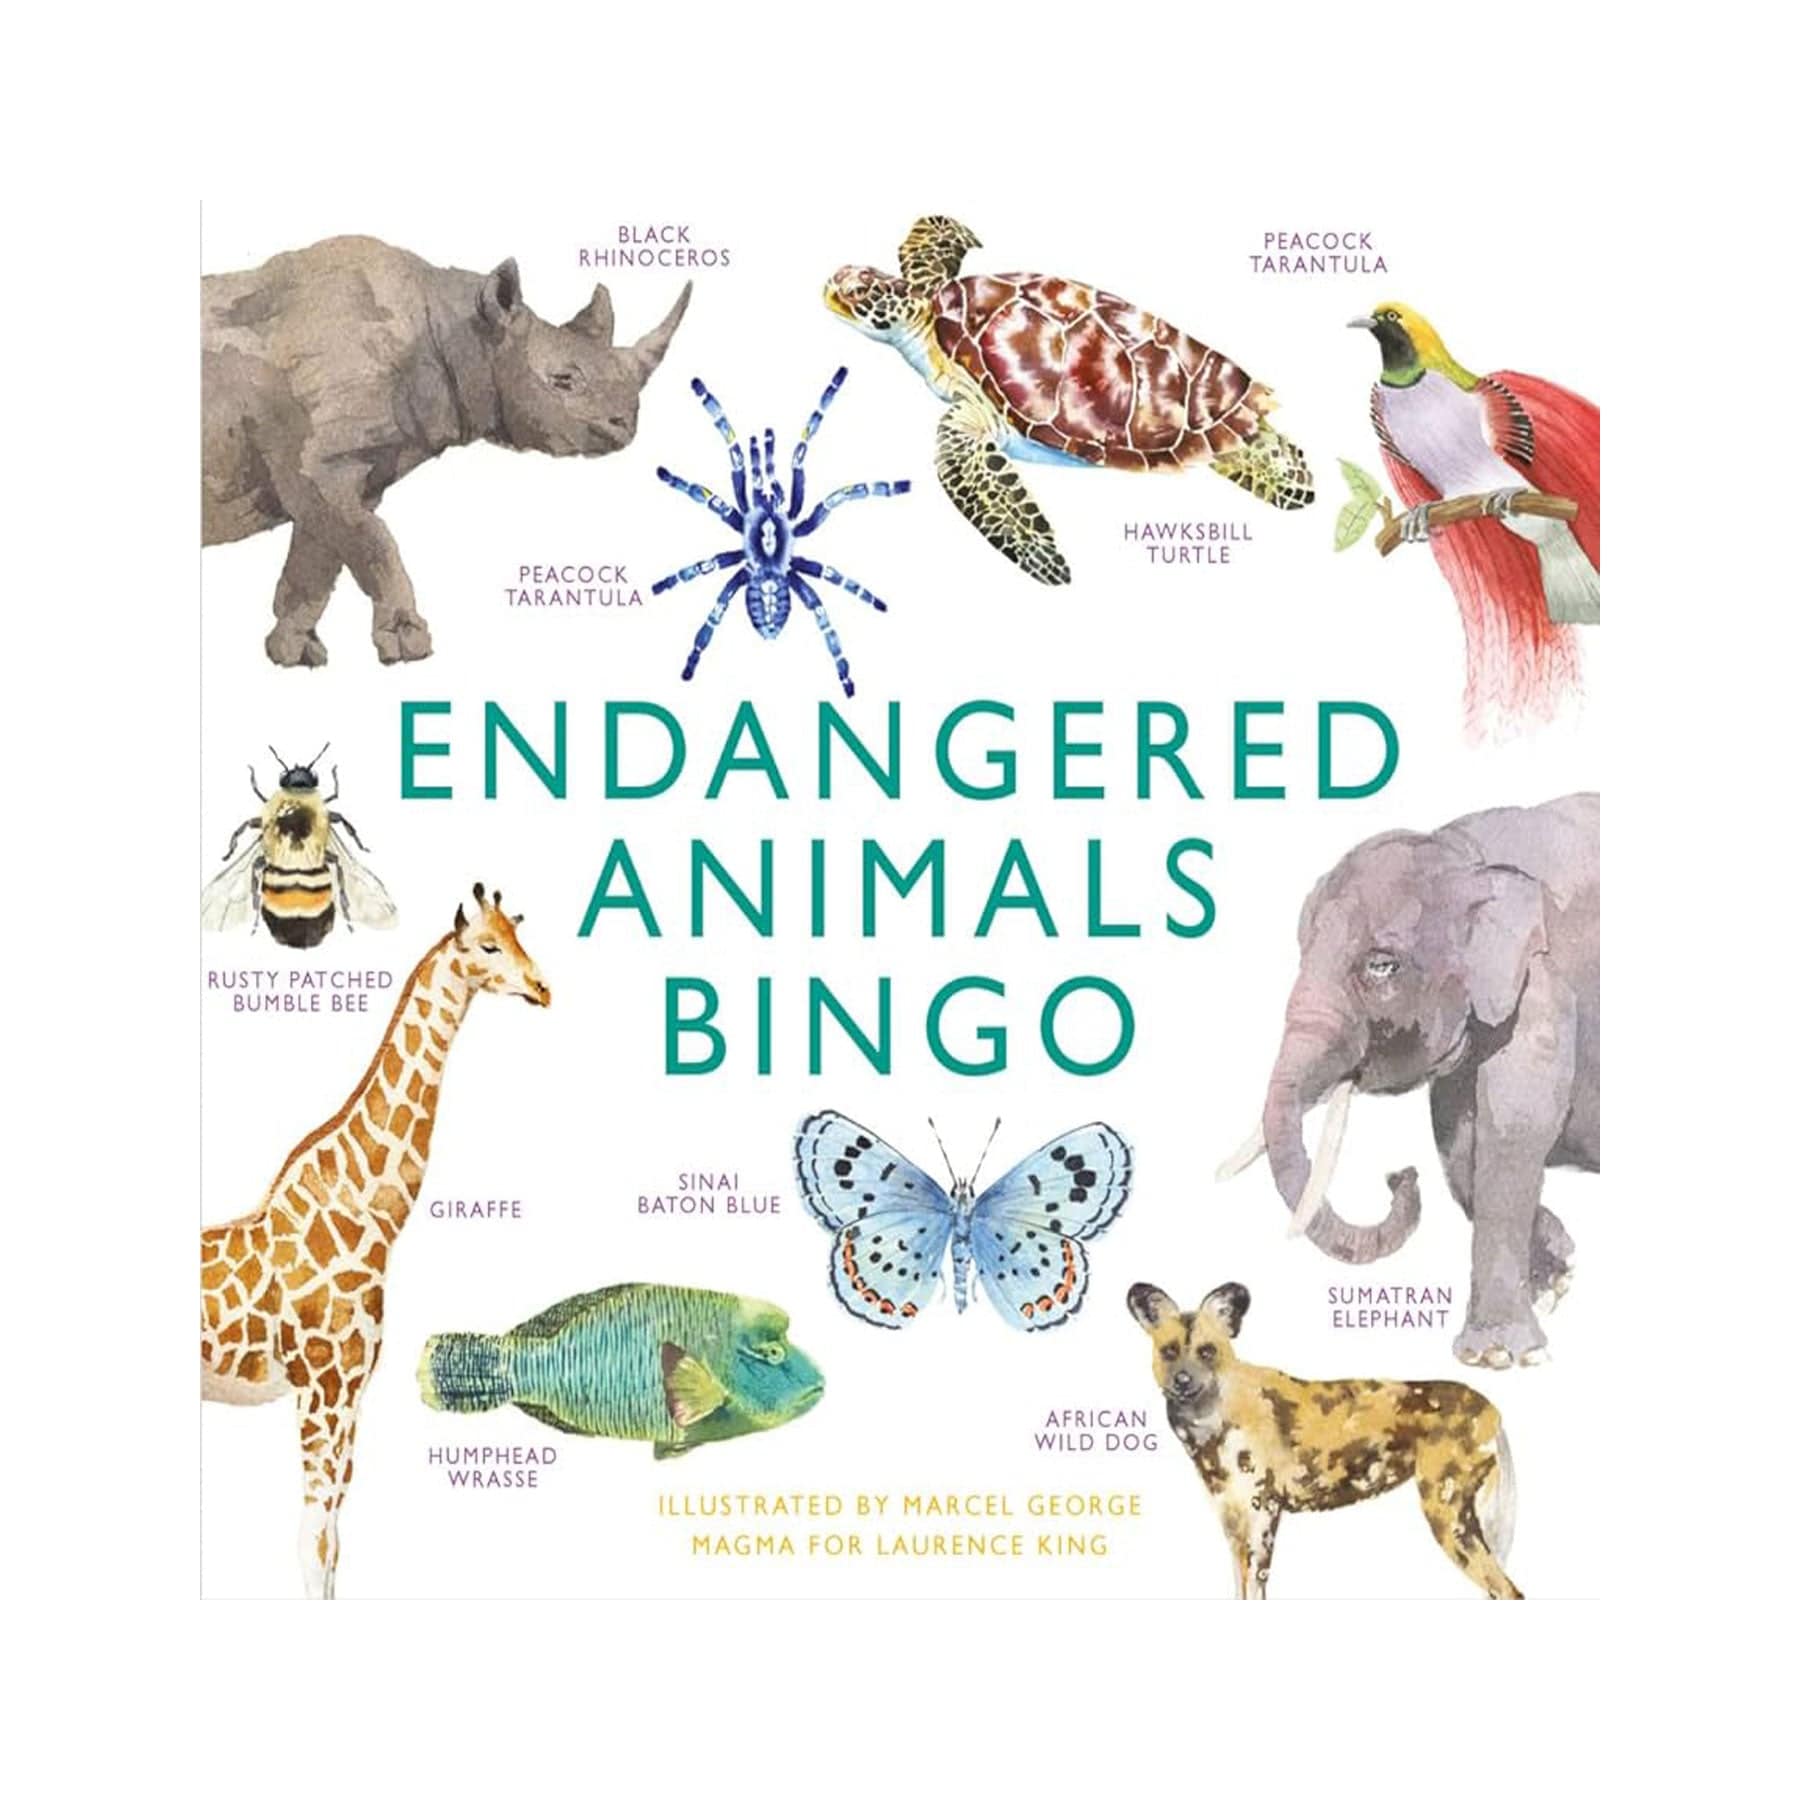 Endangered animals bingo